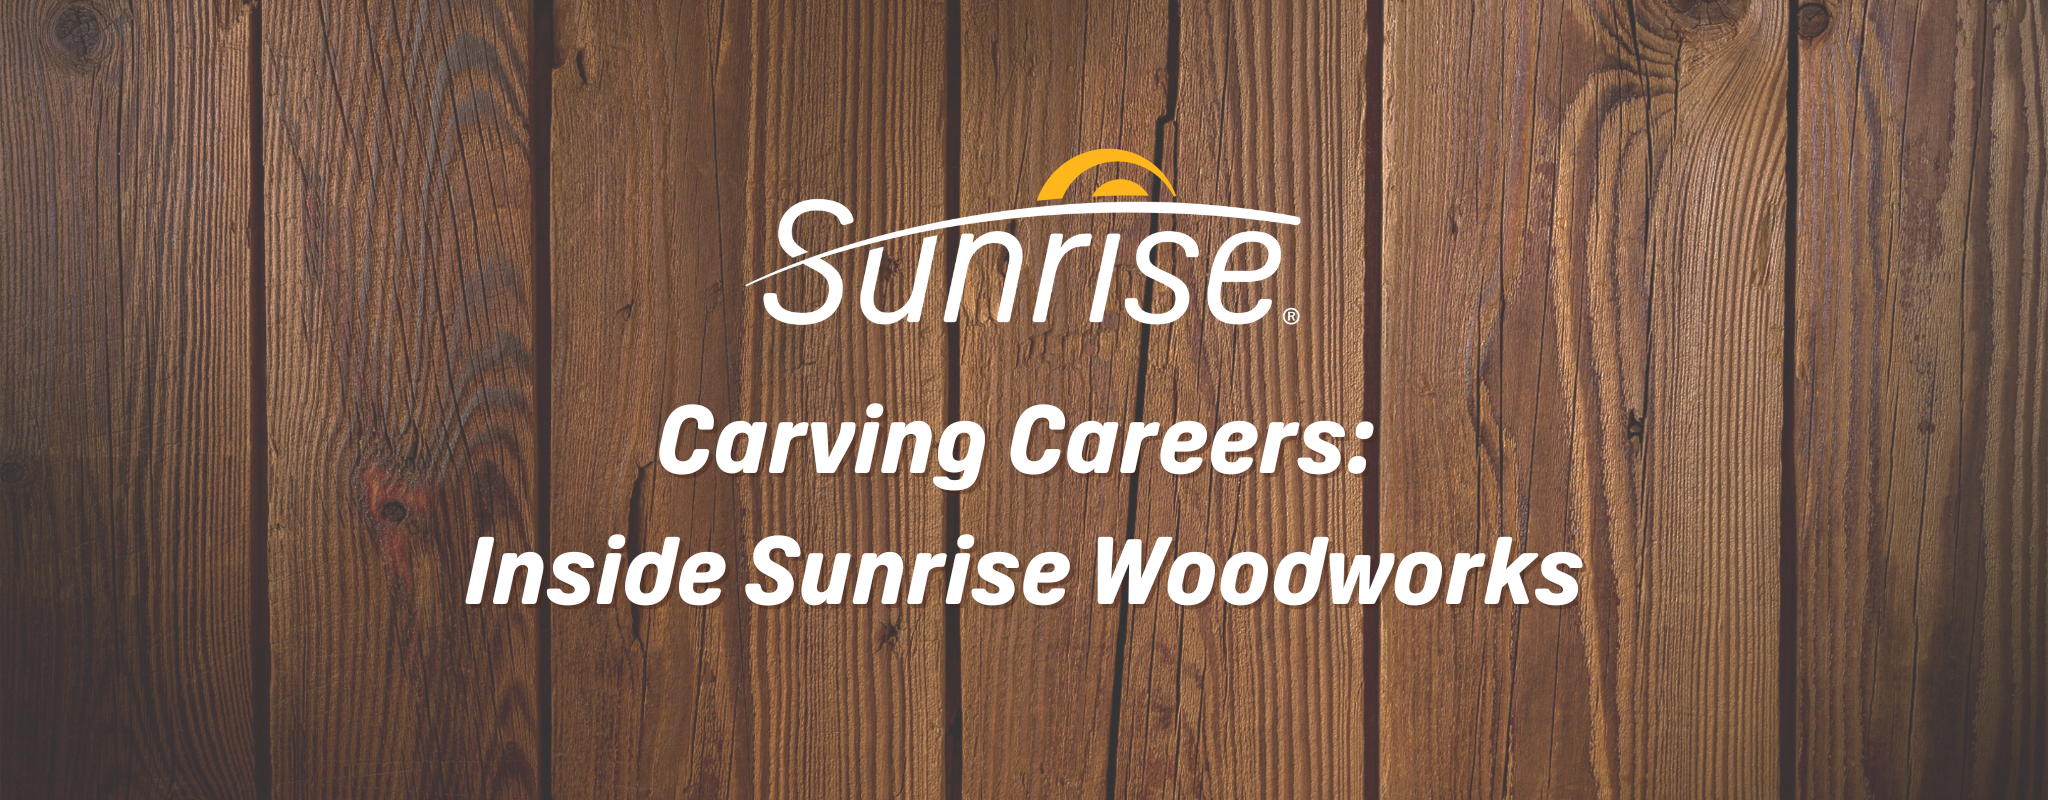 Image de bannière avec un fond en bois. Le logo Sunrise et le titre "Carving Careers: Inside Sunrise Woodworks" sont en blanc sur le fond.